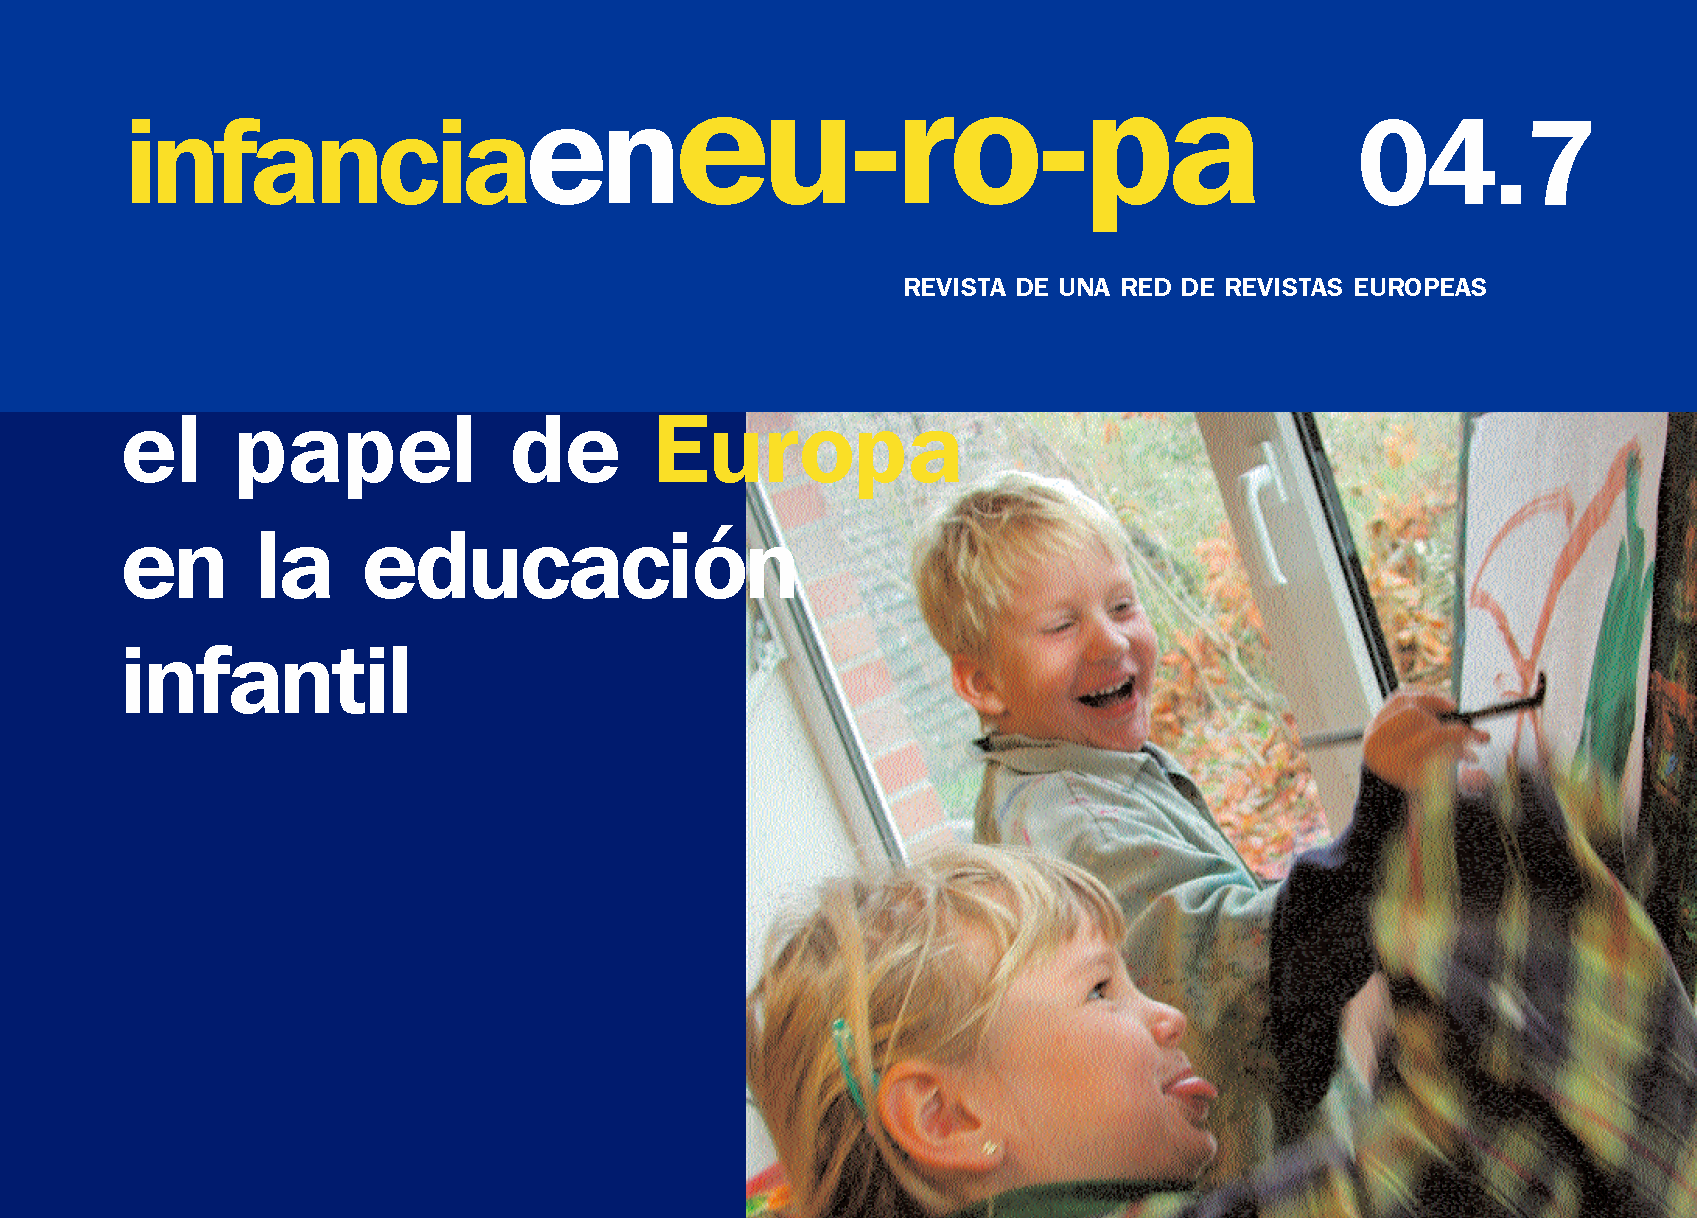 El papel de Europa en la educación infantil